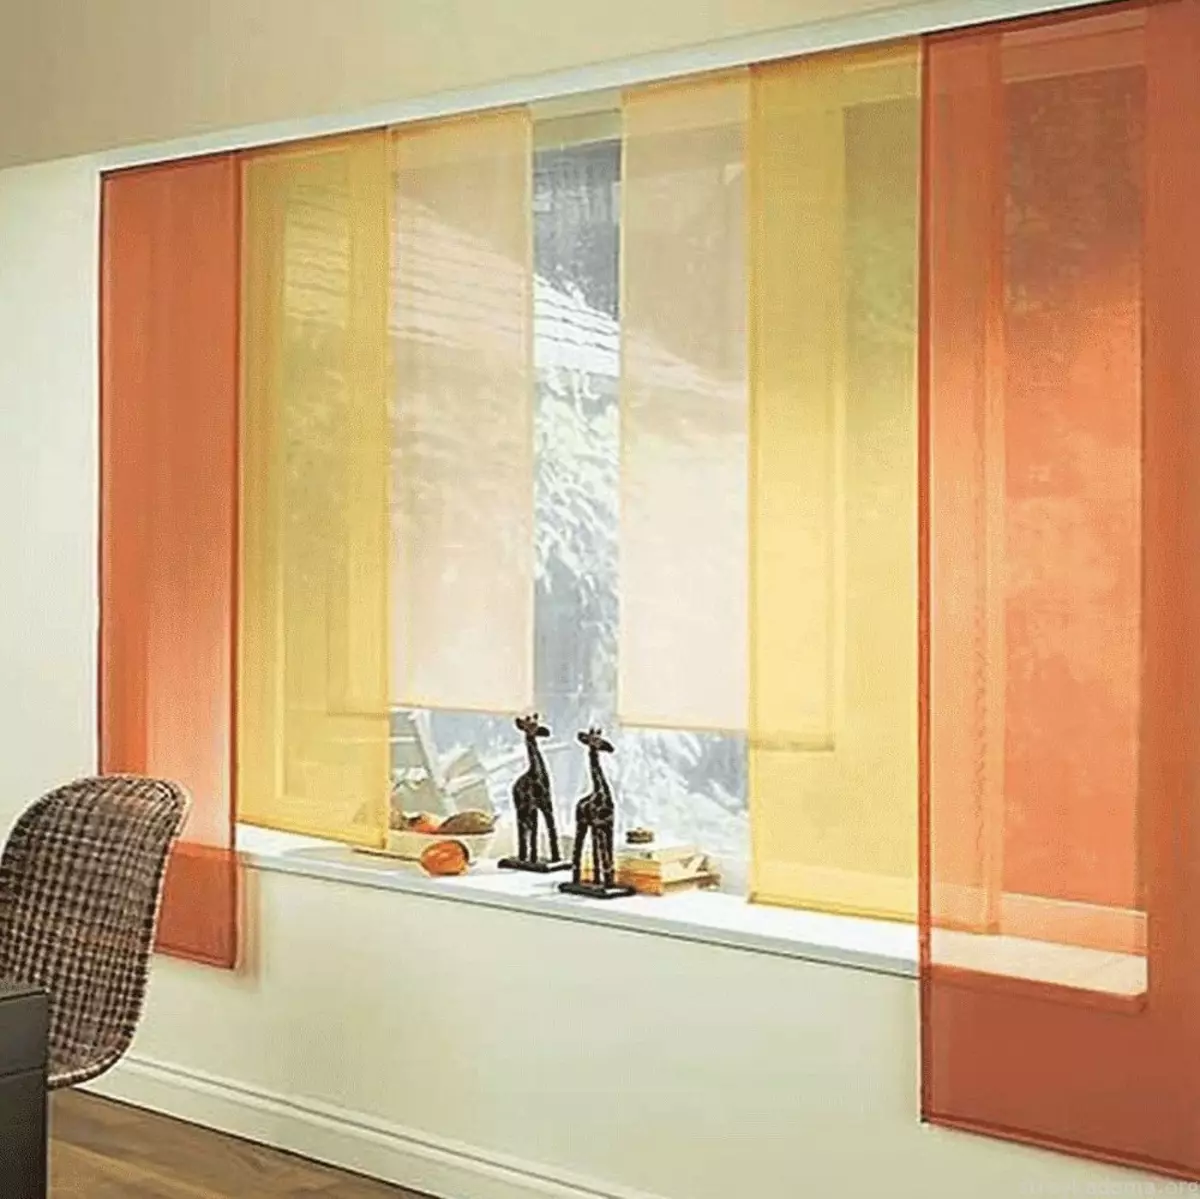 Rèm cửa trên ban công (115 ảnh): Ý tưởng cho thiết kế rèm cửa sổ ban công. Làm thế nào để treo rèm đẹp? Thiết kế rèm bạt nhẹ và các tùy chọn khác 10025_95